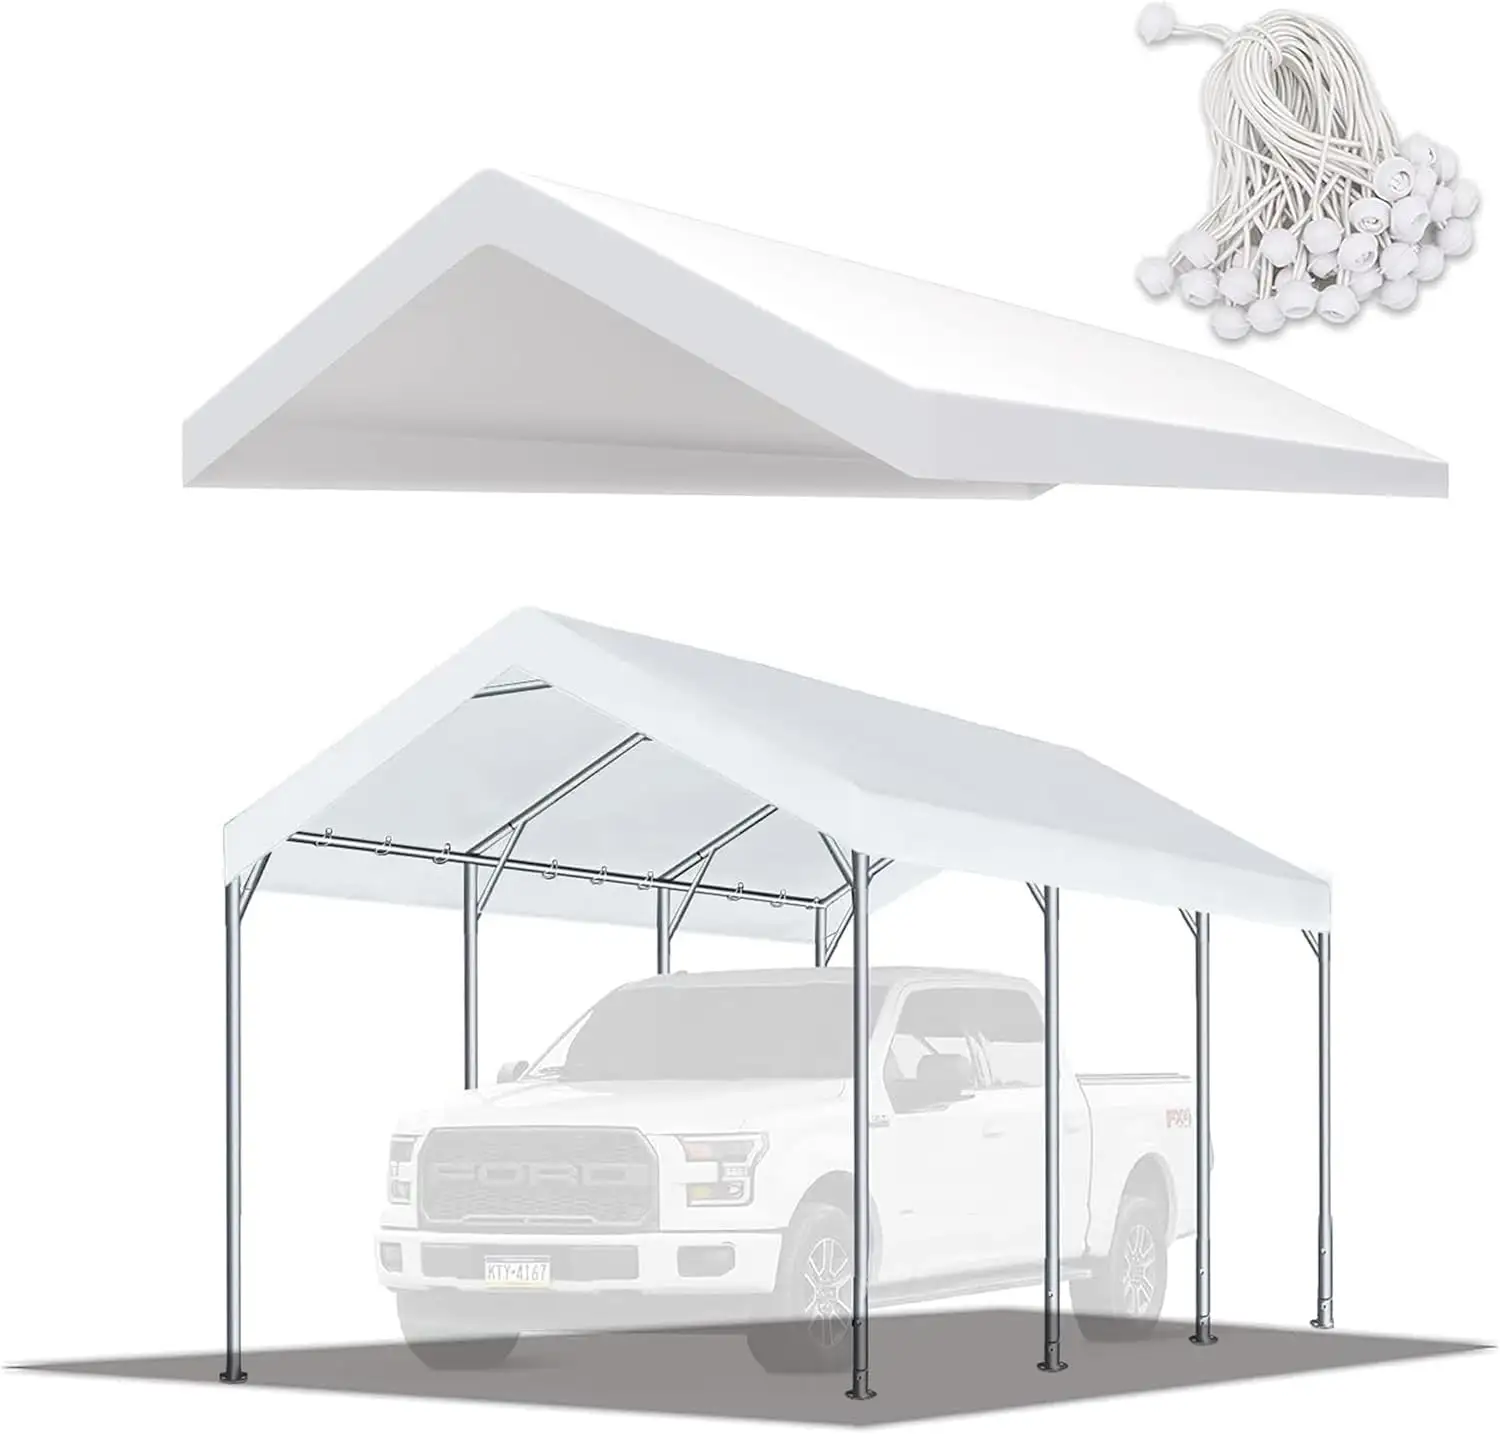 Araba garaj üst muşamba barınak için üst kapak Carport yedek üst gölgelik örtüsü beyaz su geçirmez ve UV korumalı